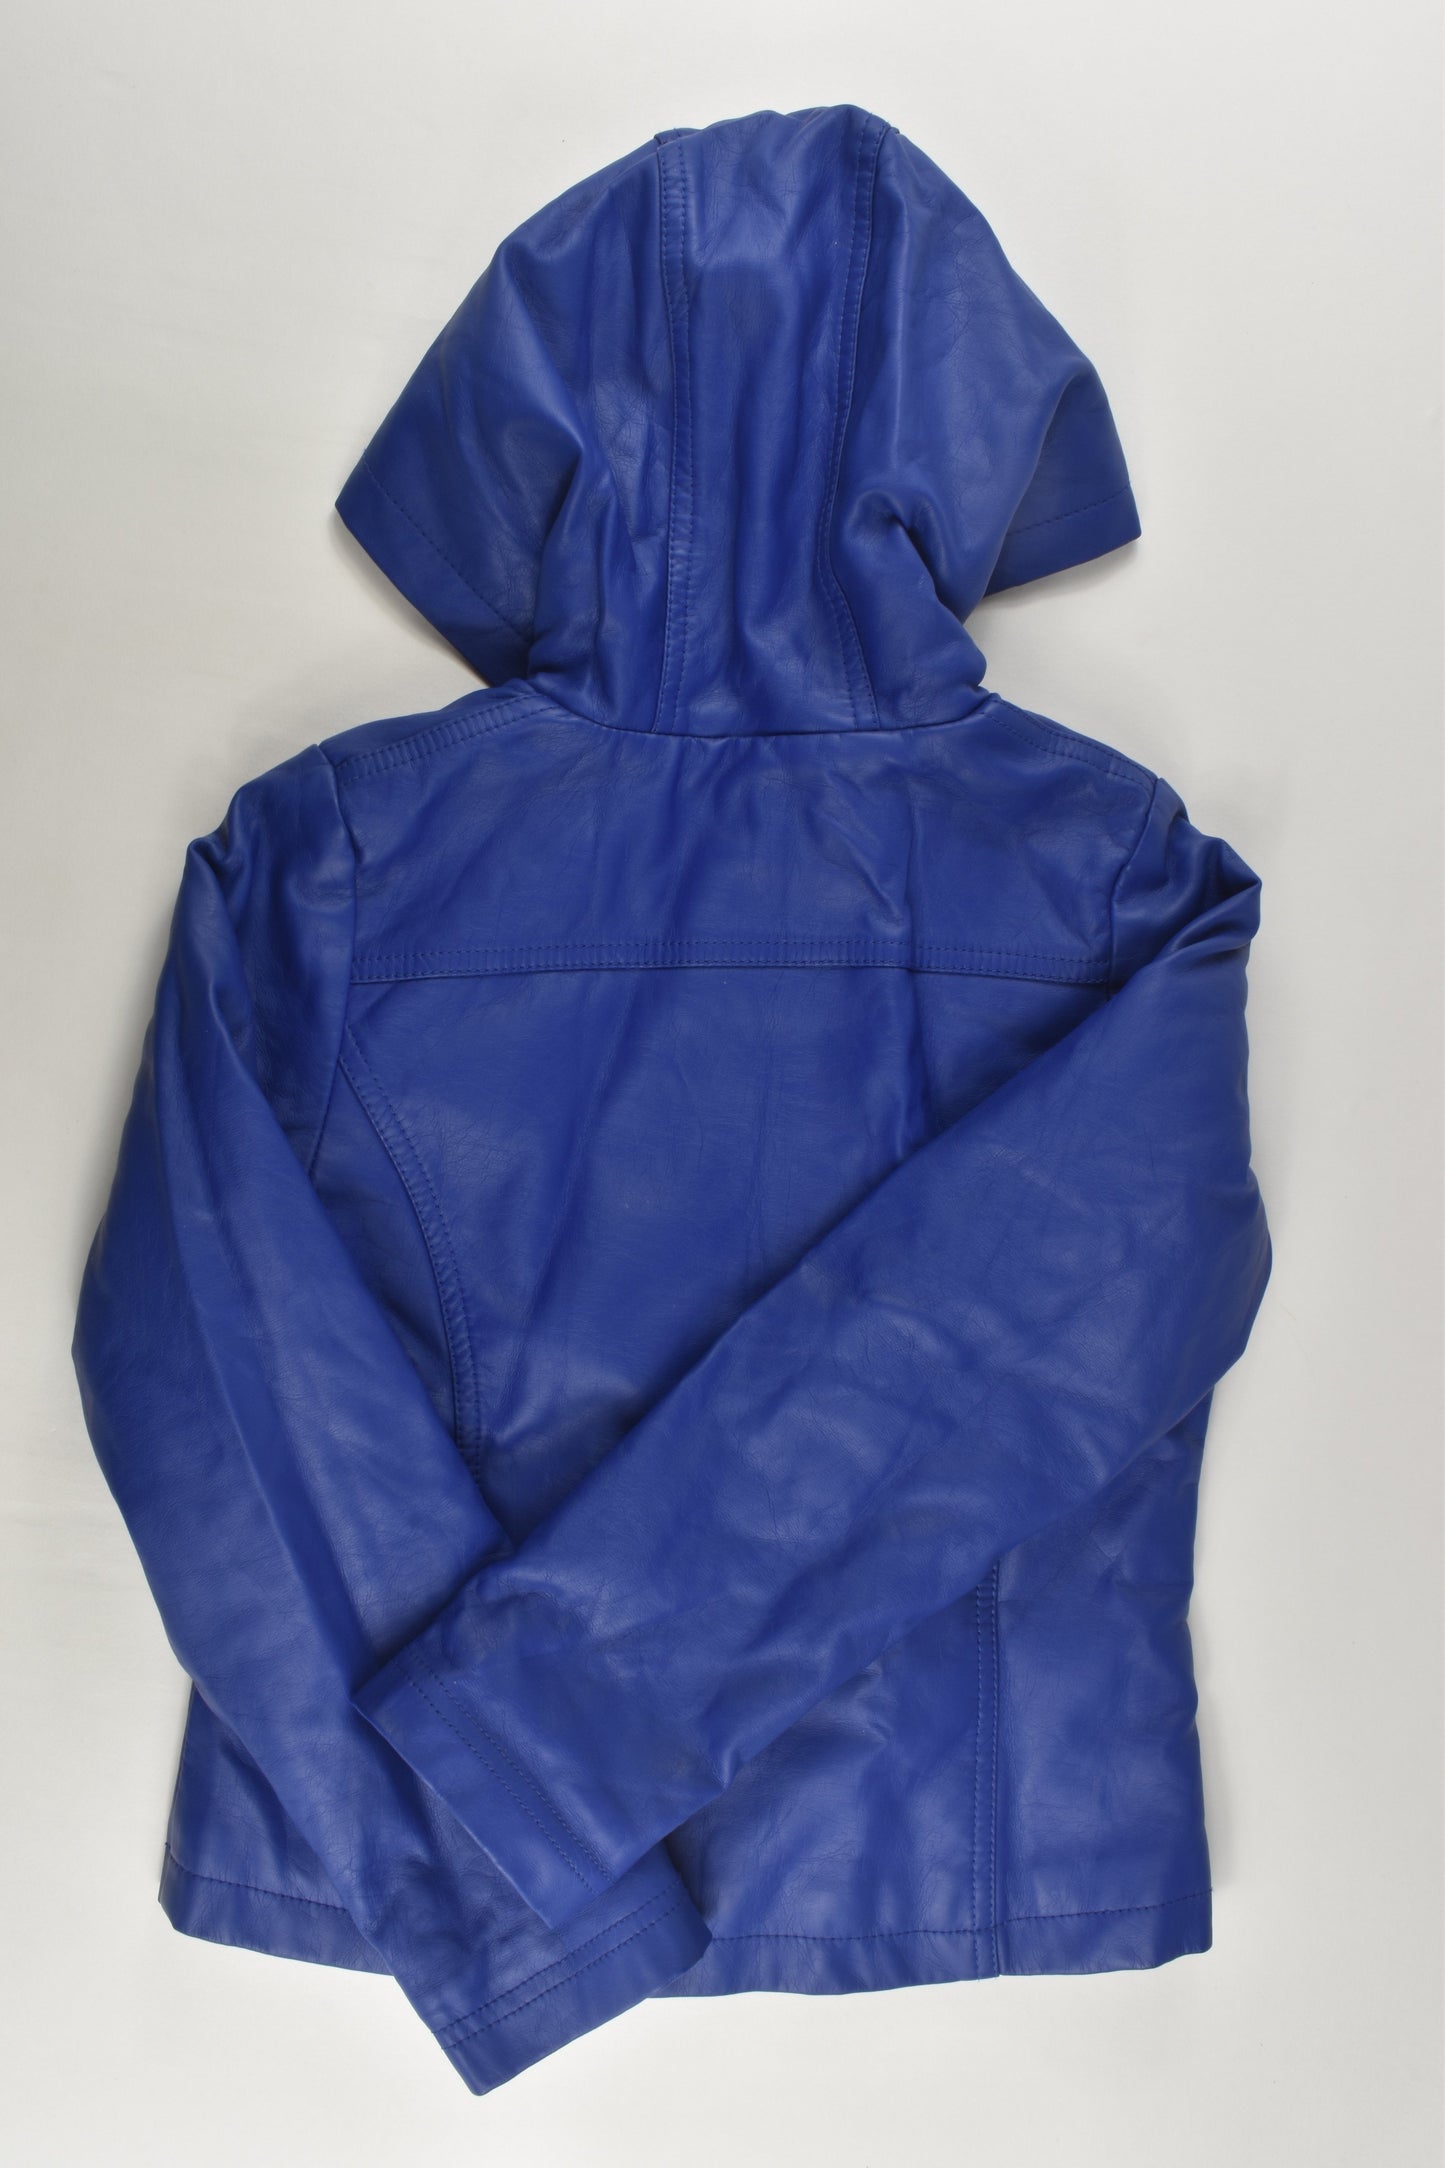 Pumpkin Patch Size 7 Fleece Lined Hooded Leather-like Jacket